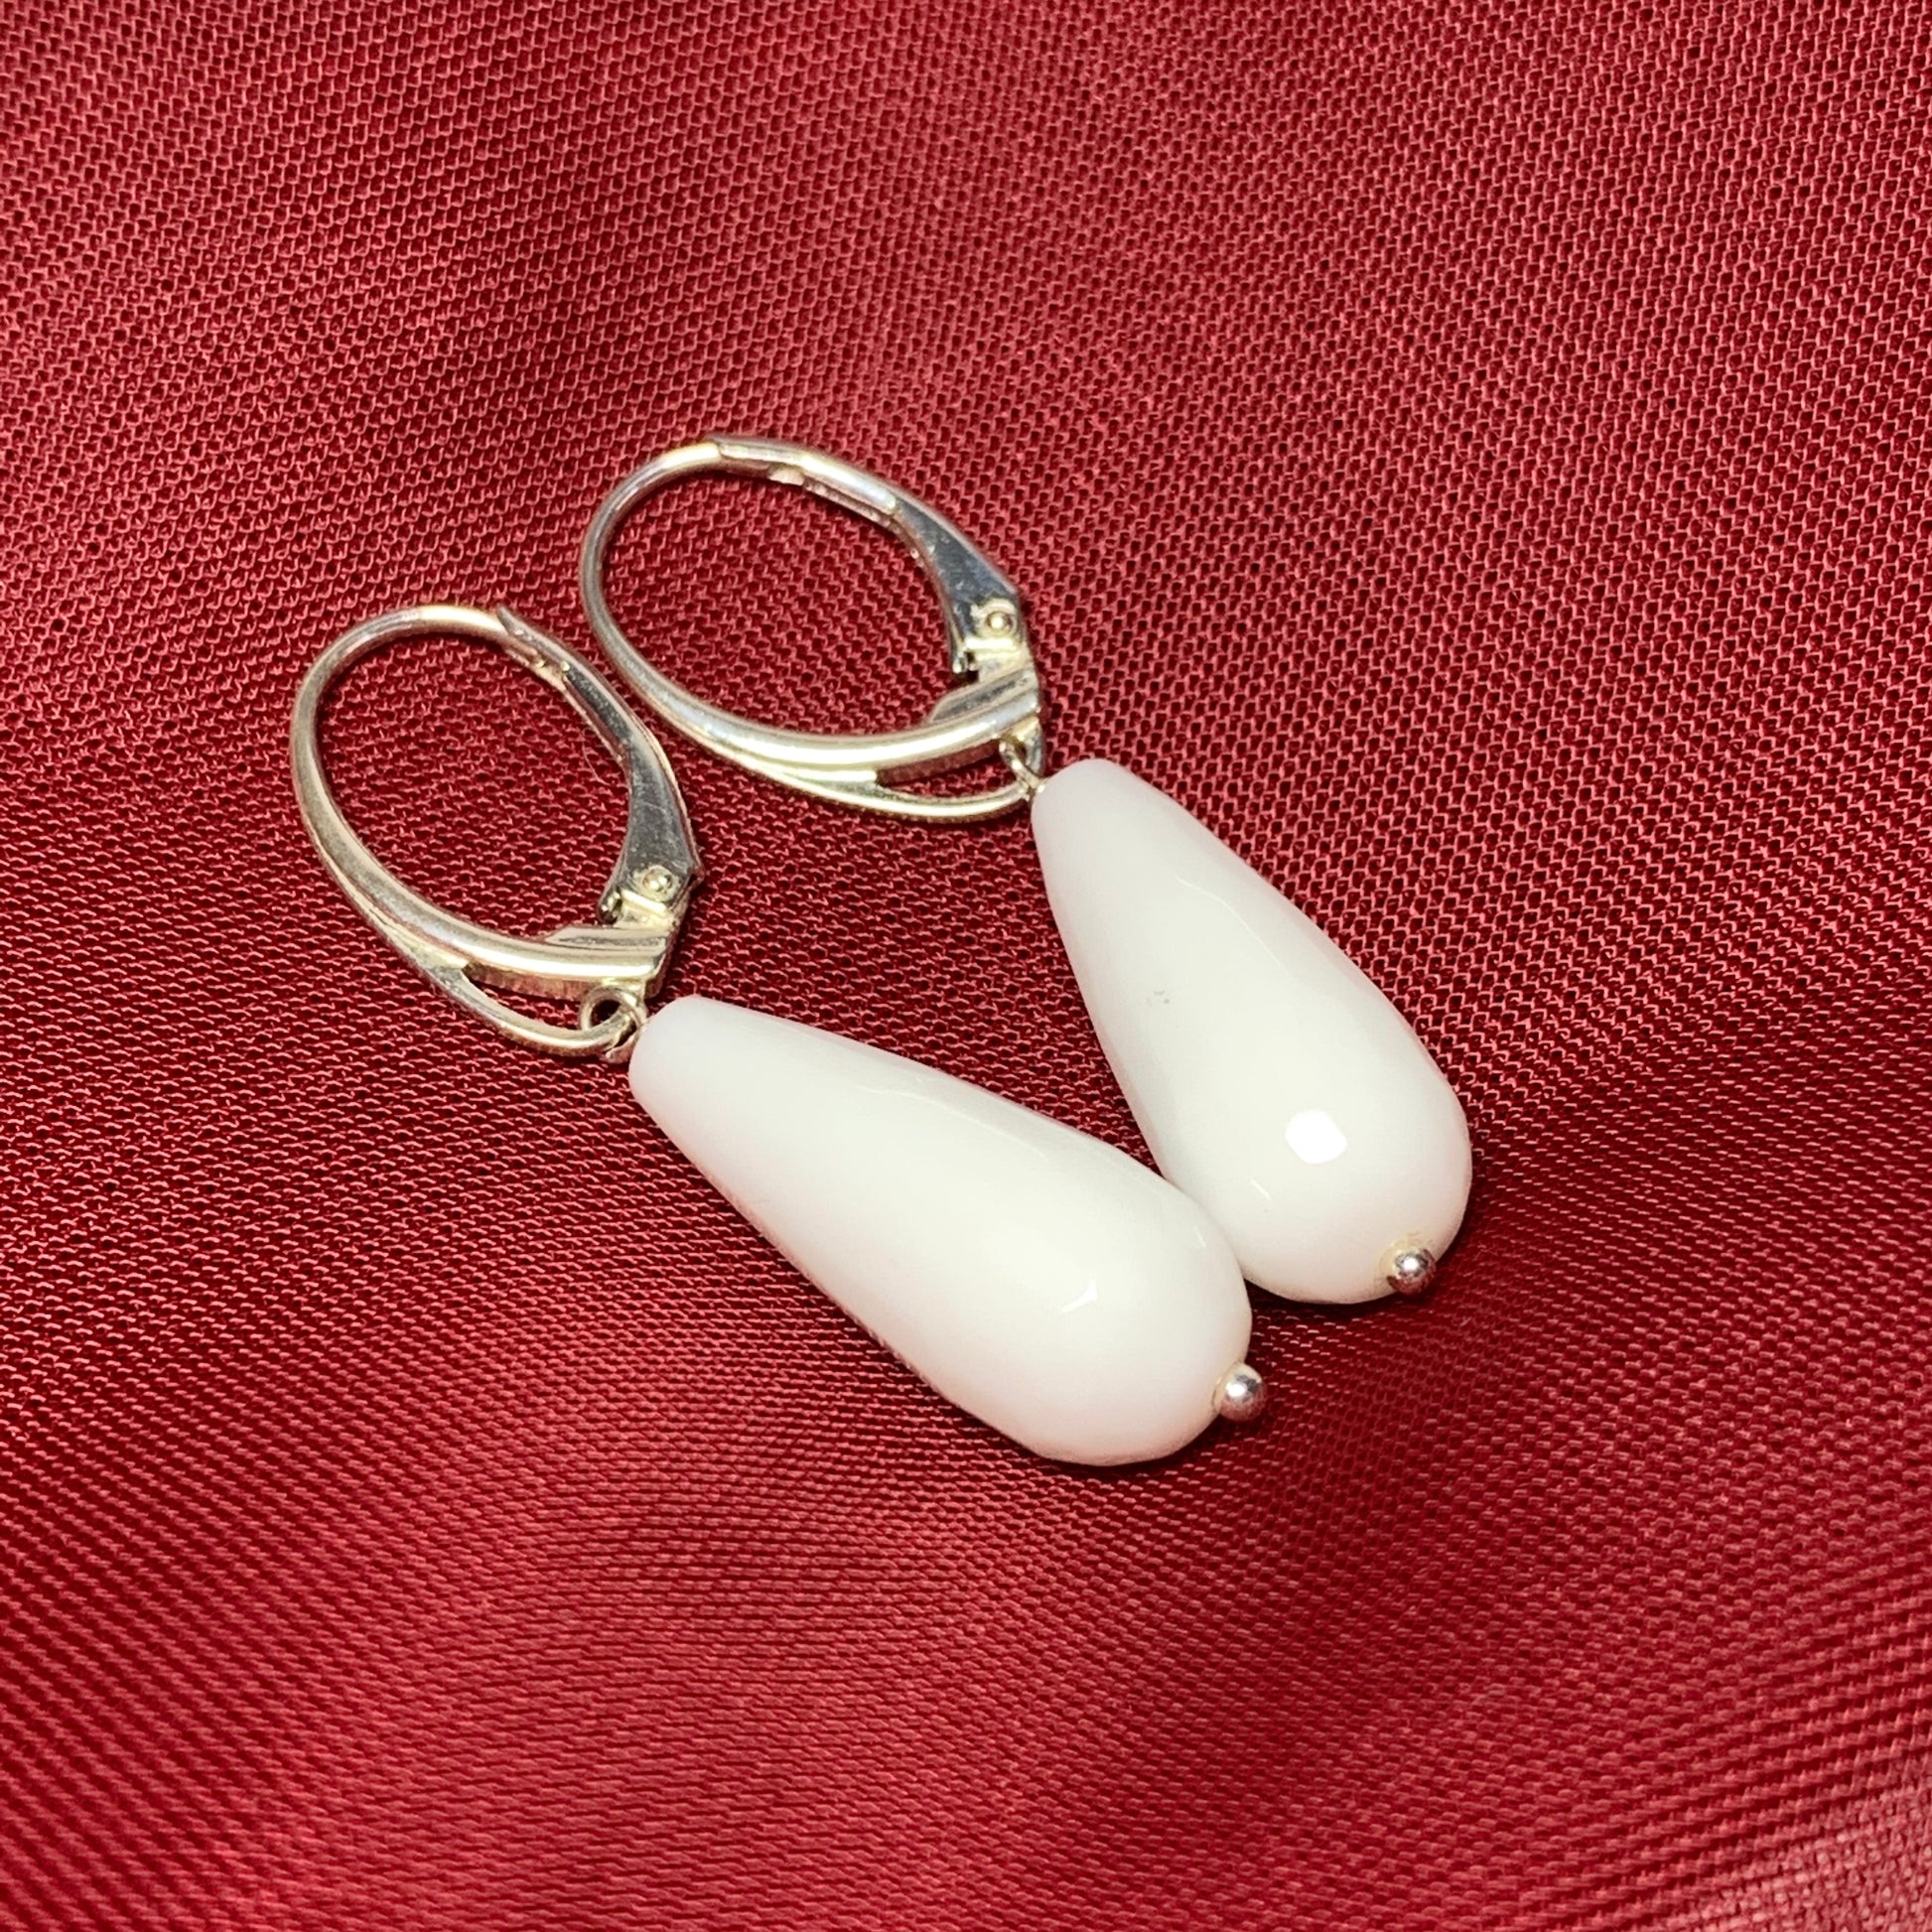 White teardrop shaped agate drop earrings